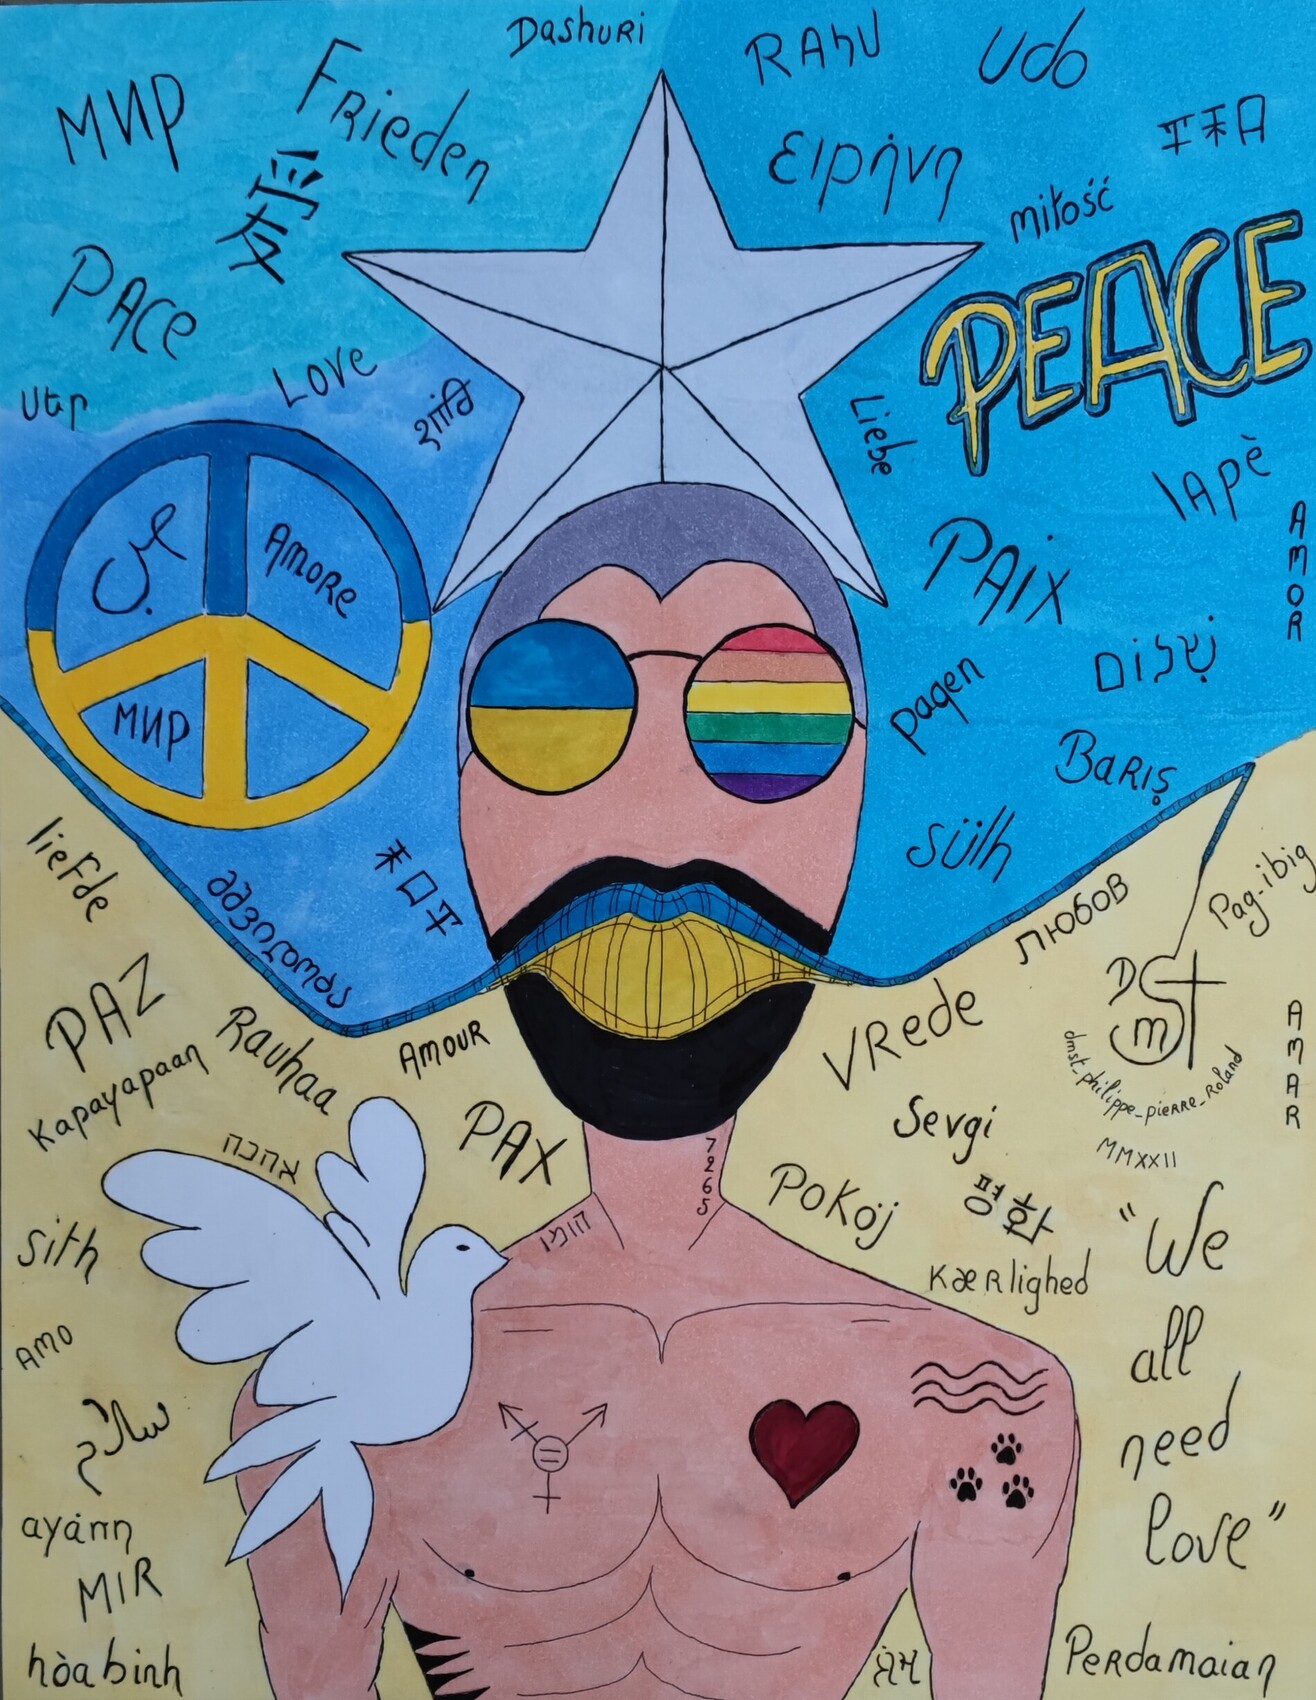 Verka DMST said "Peace and love"